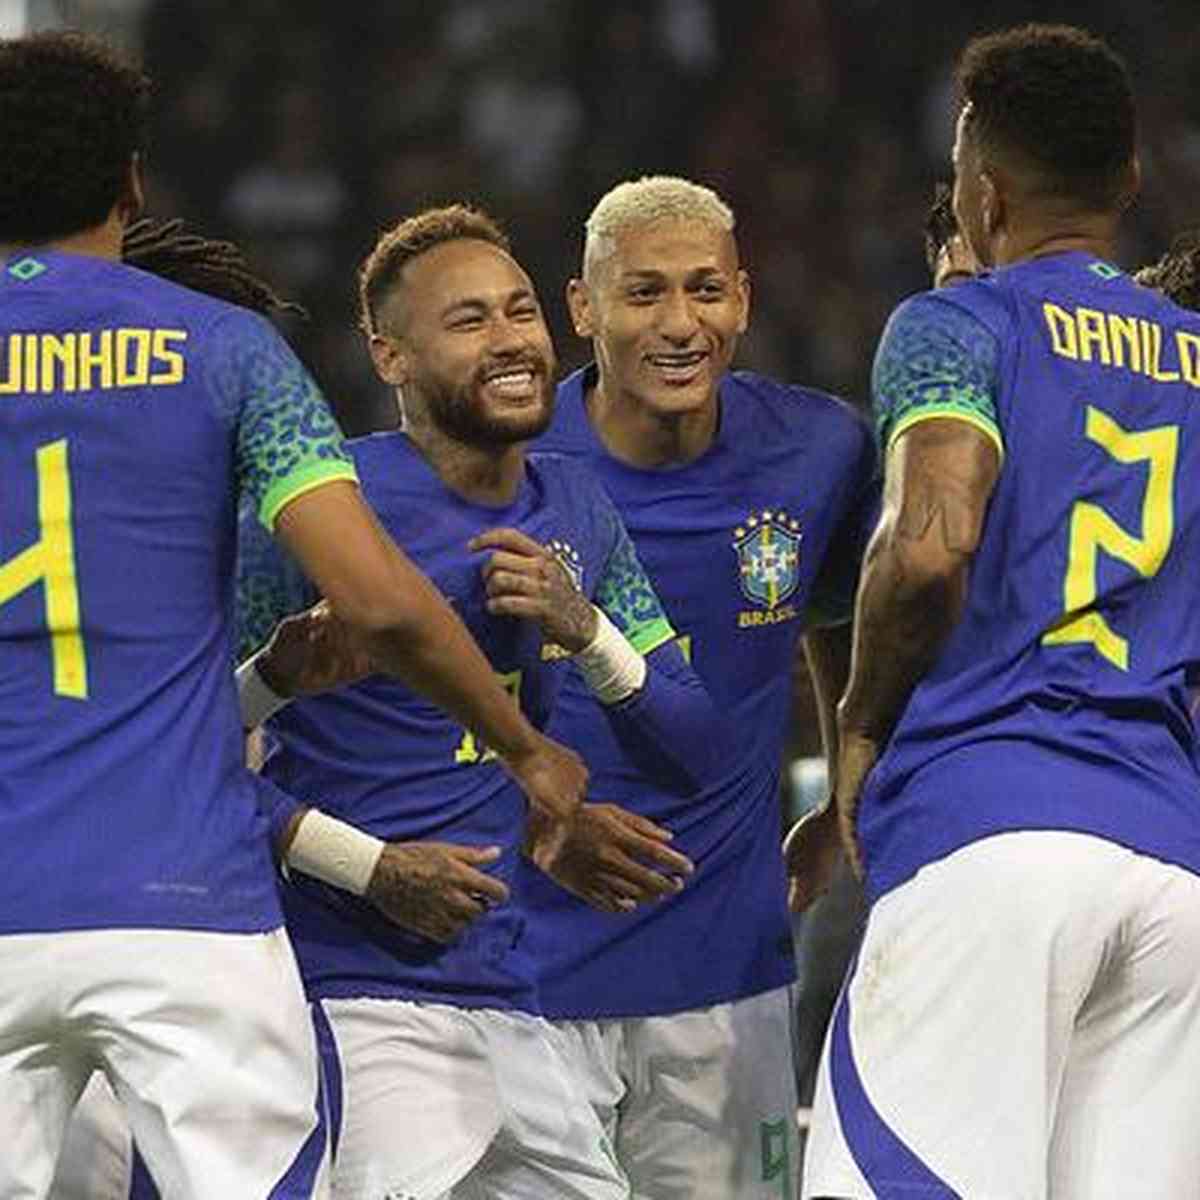 Copa do Mundo feminina: Brasil tem último adversário definido; veja grupos  - Superesportes